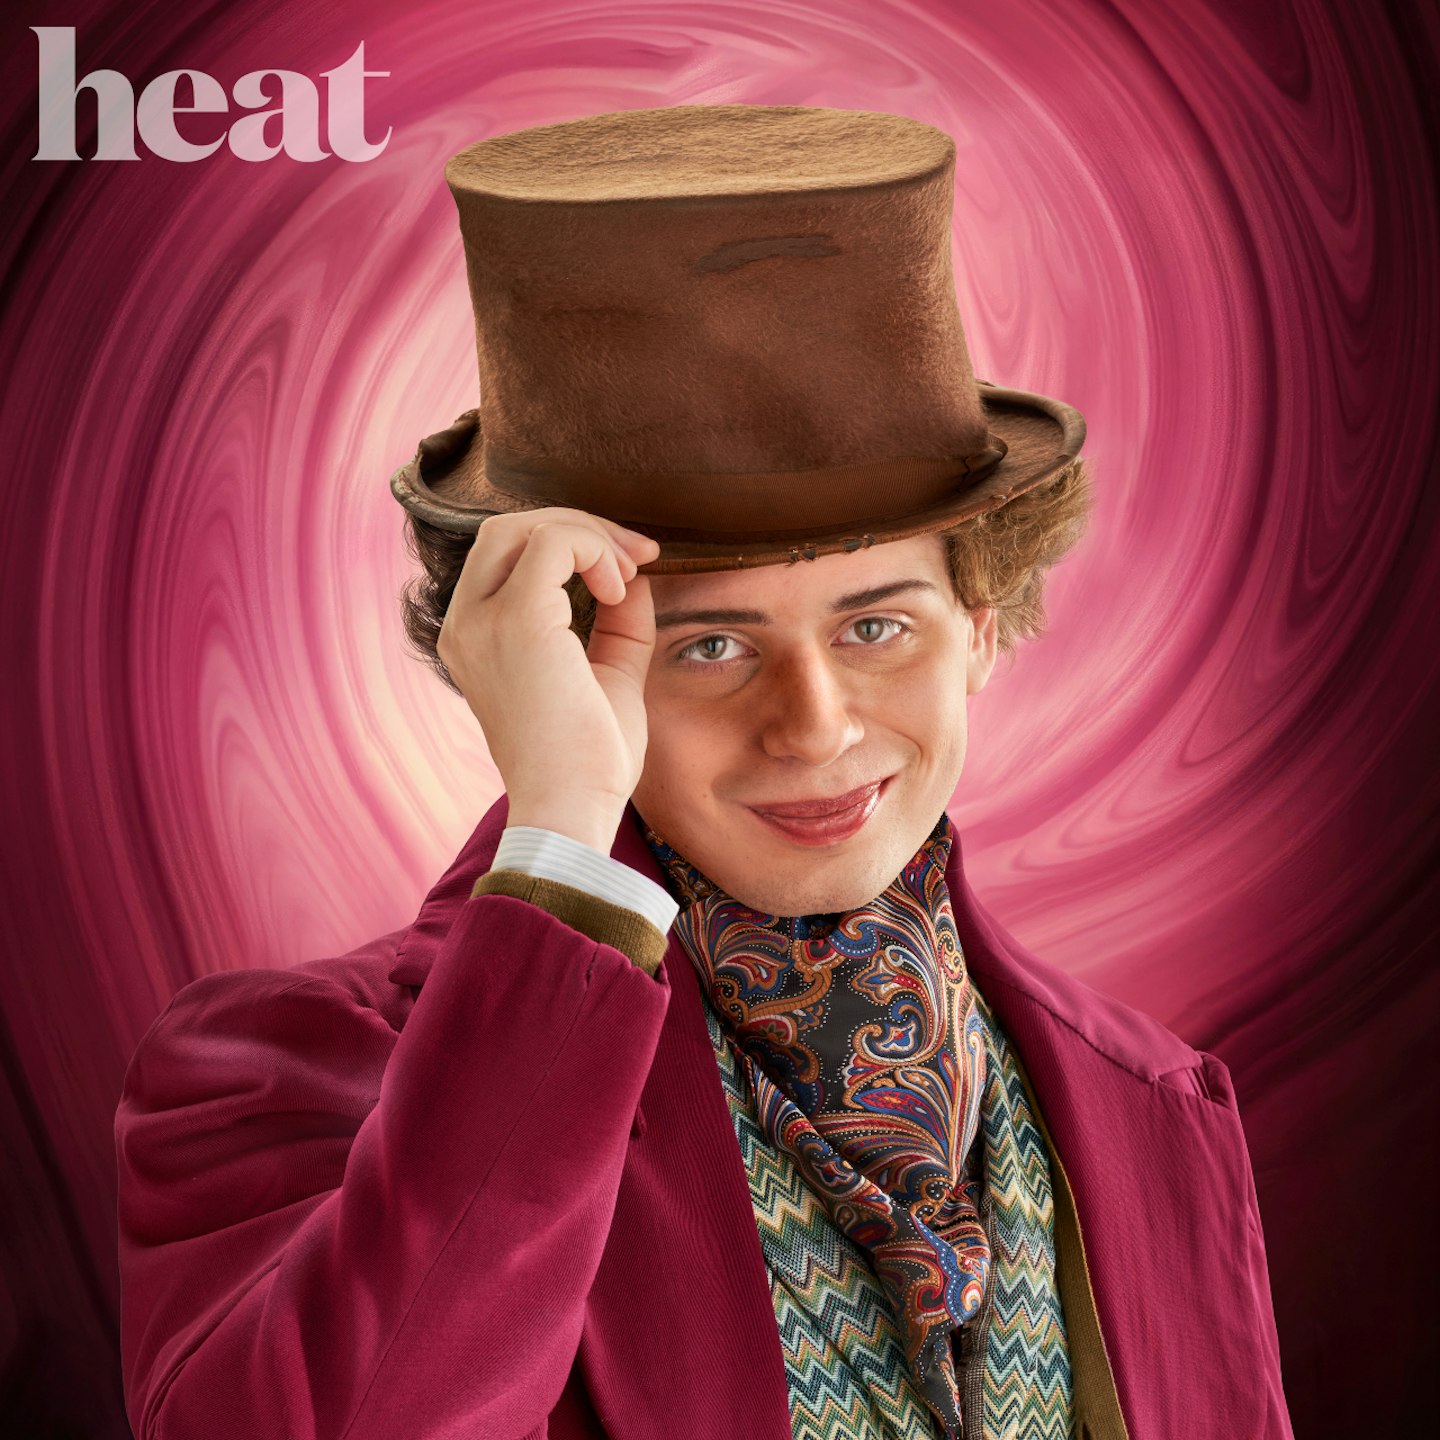 Jordan Sangha as Willy Wonka